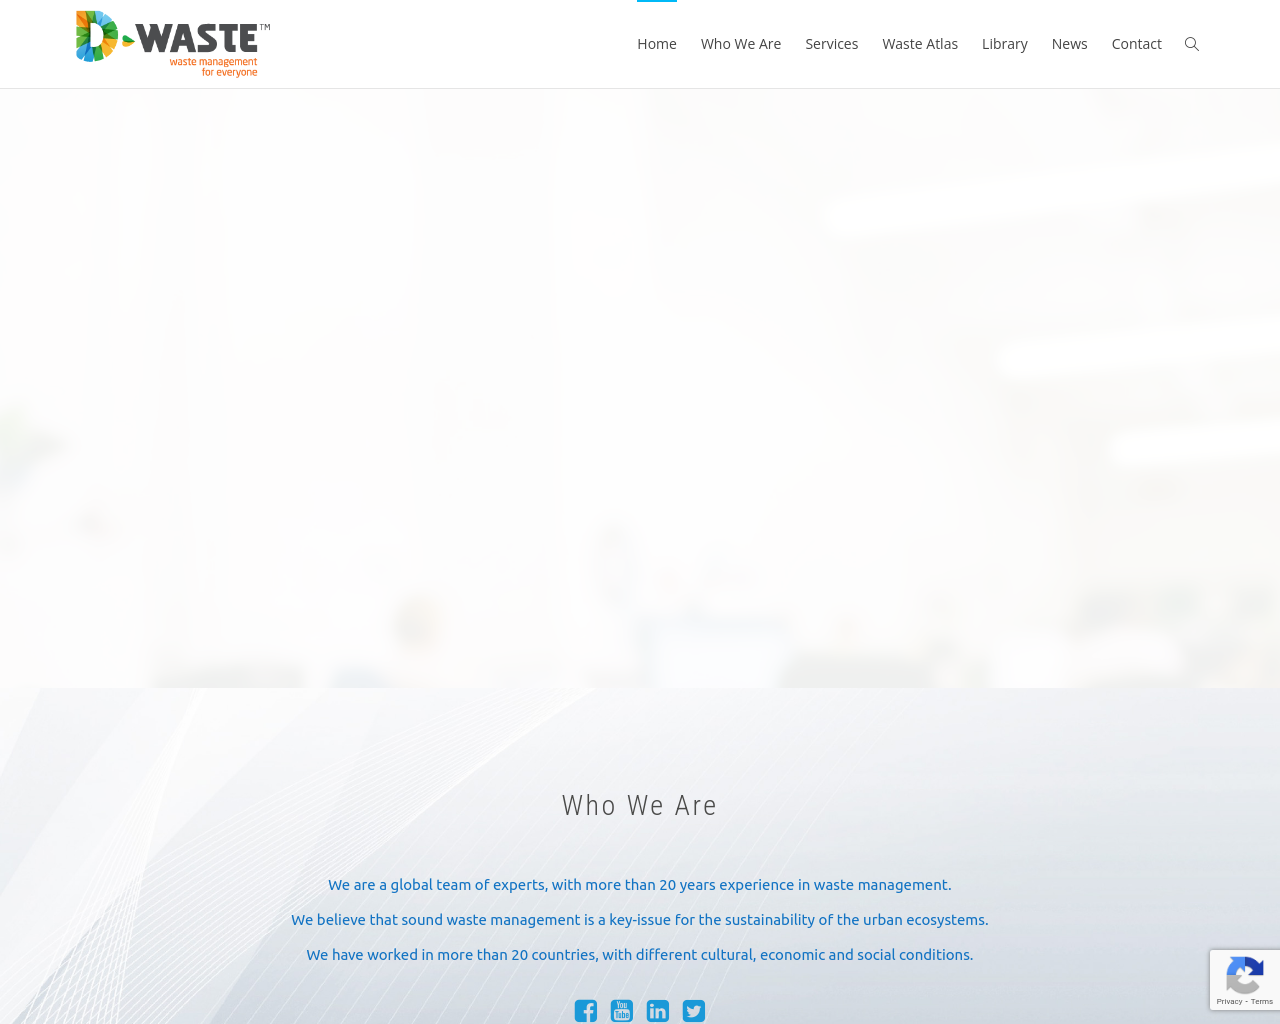 d-waste.com